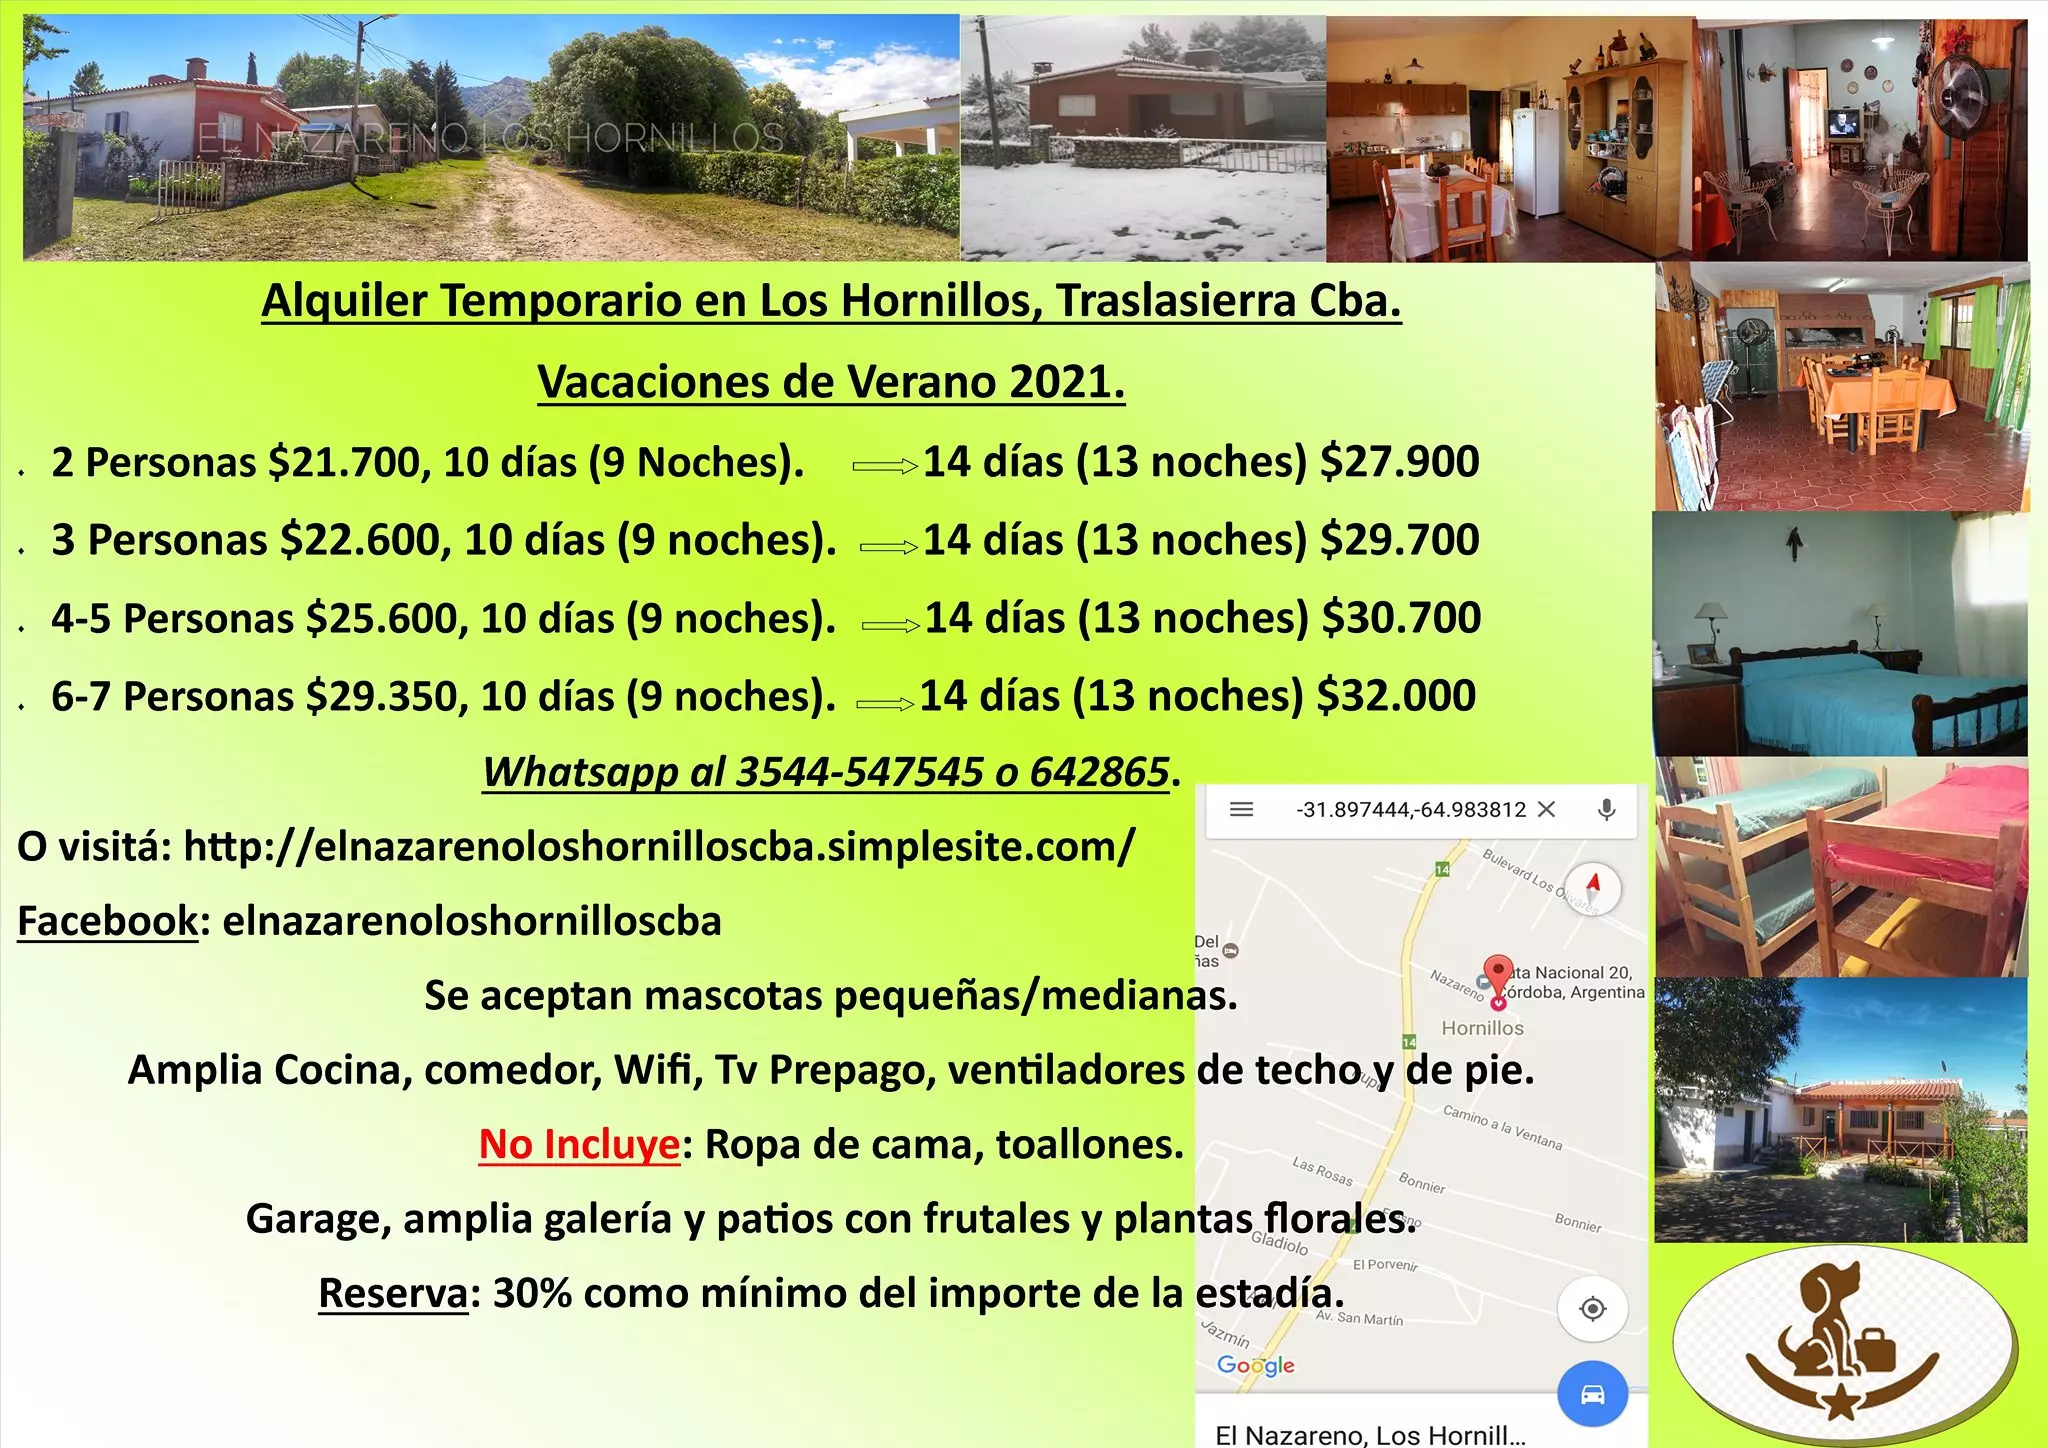 Alquiler temporario para 2, 3, 4-5, y 6-7 personas en Córdoba,  Traslasierra